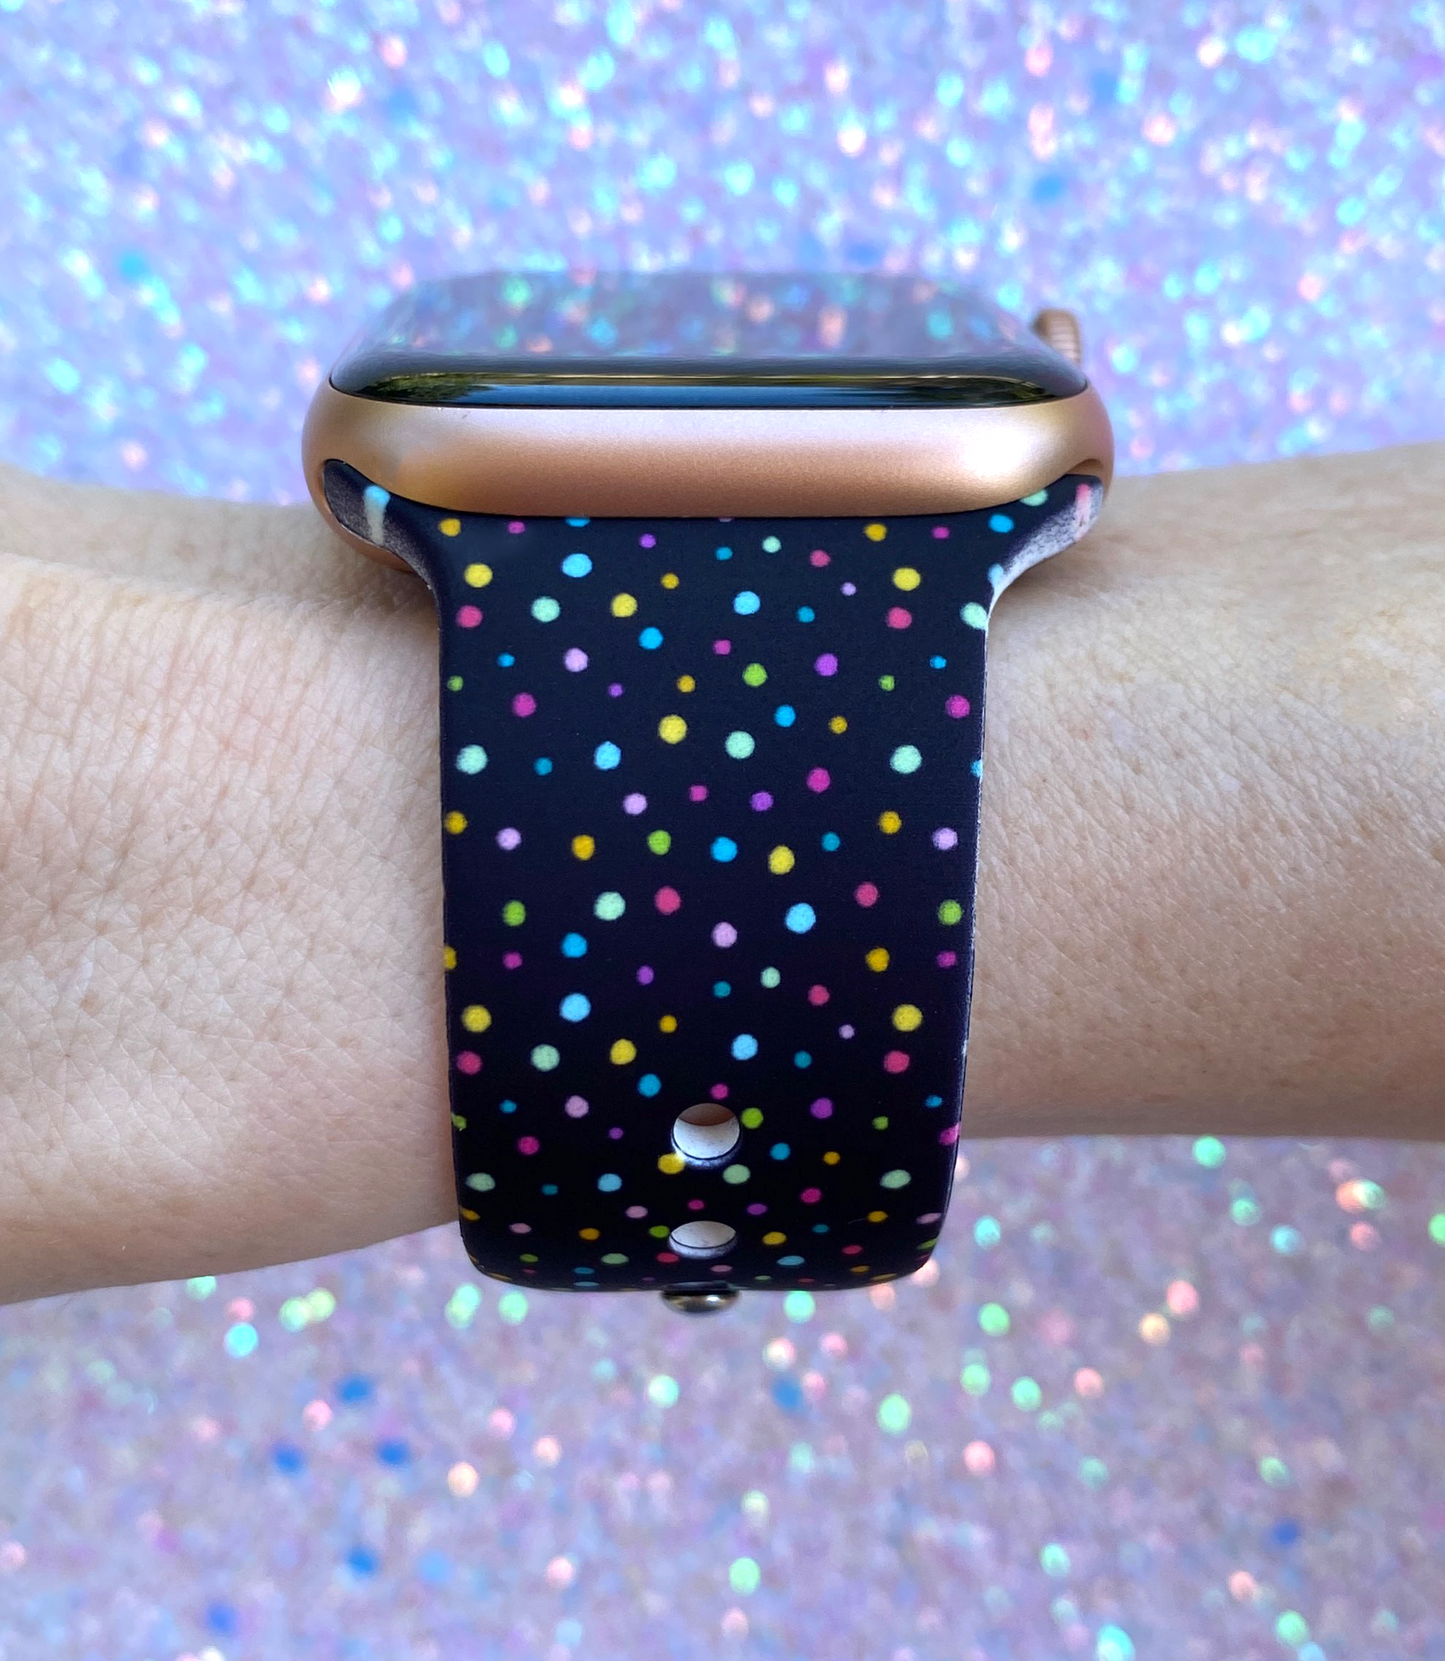 Christmas Gift Bundle Fitbit Versa 3/Versa 4/Sense/Sense 2 Watch Band